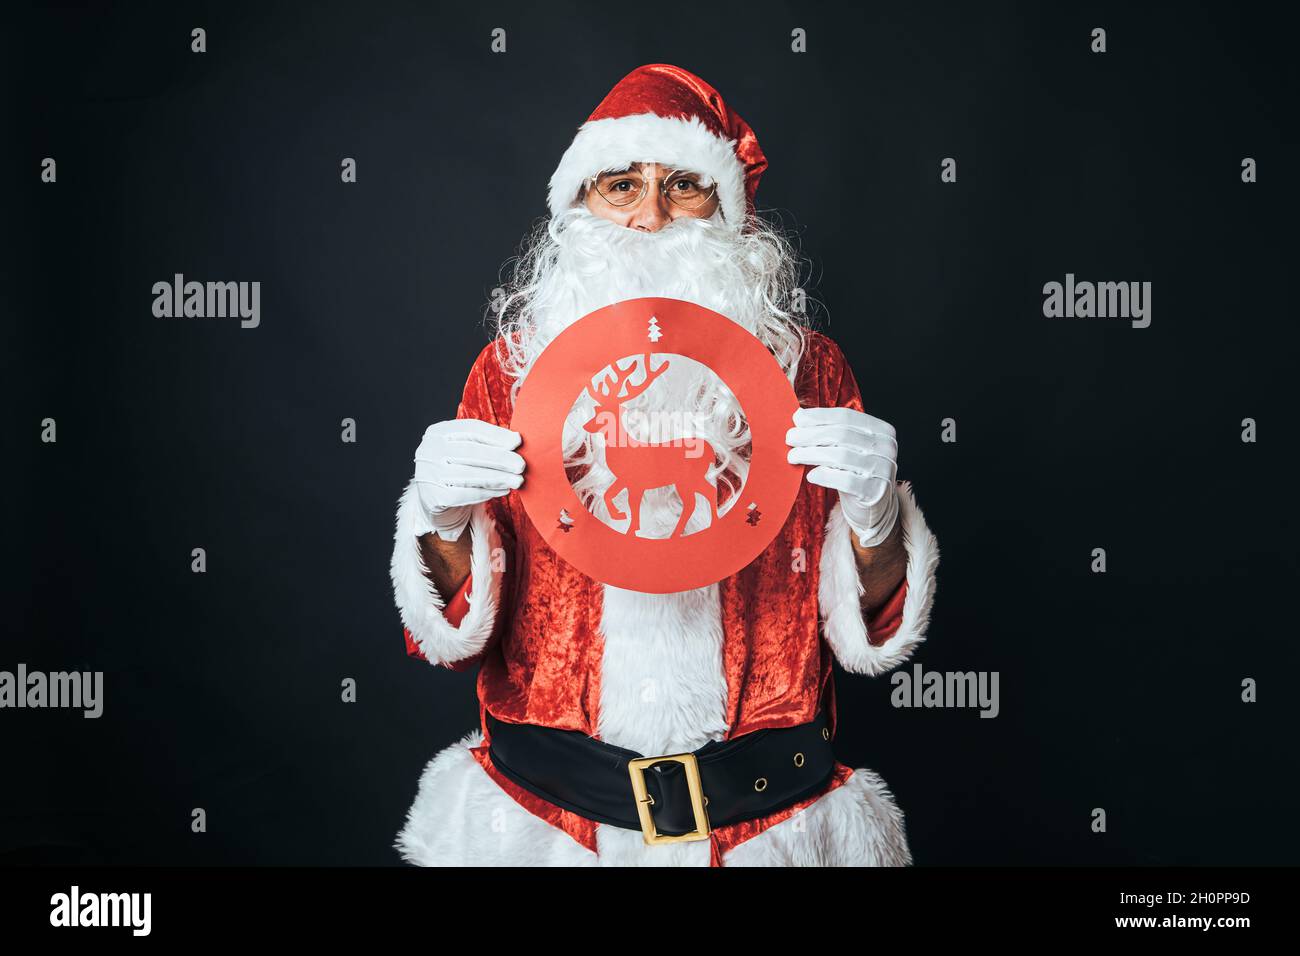 Mann, der als Weihnachtsmann gekleidet ist und ein Verkehrsschild mit einem verbietenden Rentier auf schwarzem Hintergrund hält. Weihnachtskonzept, Weihnachtsmann, Geschenke, Feier. Stockfoto